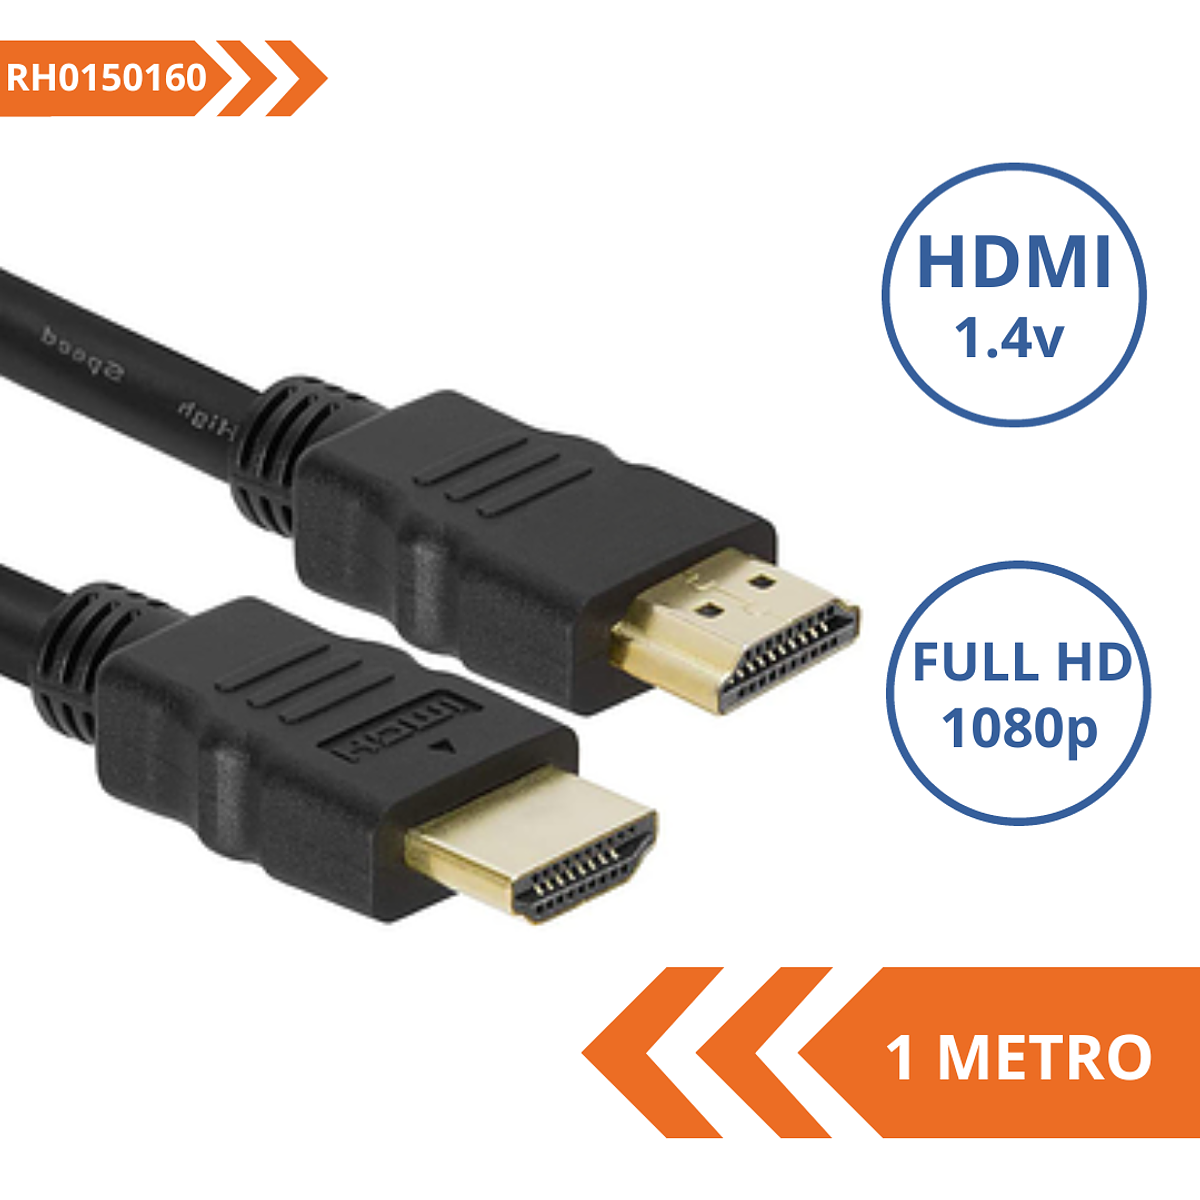 CABLE HDMI DE 1 METRO MACHO A MACHO